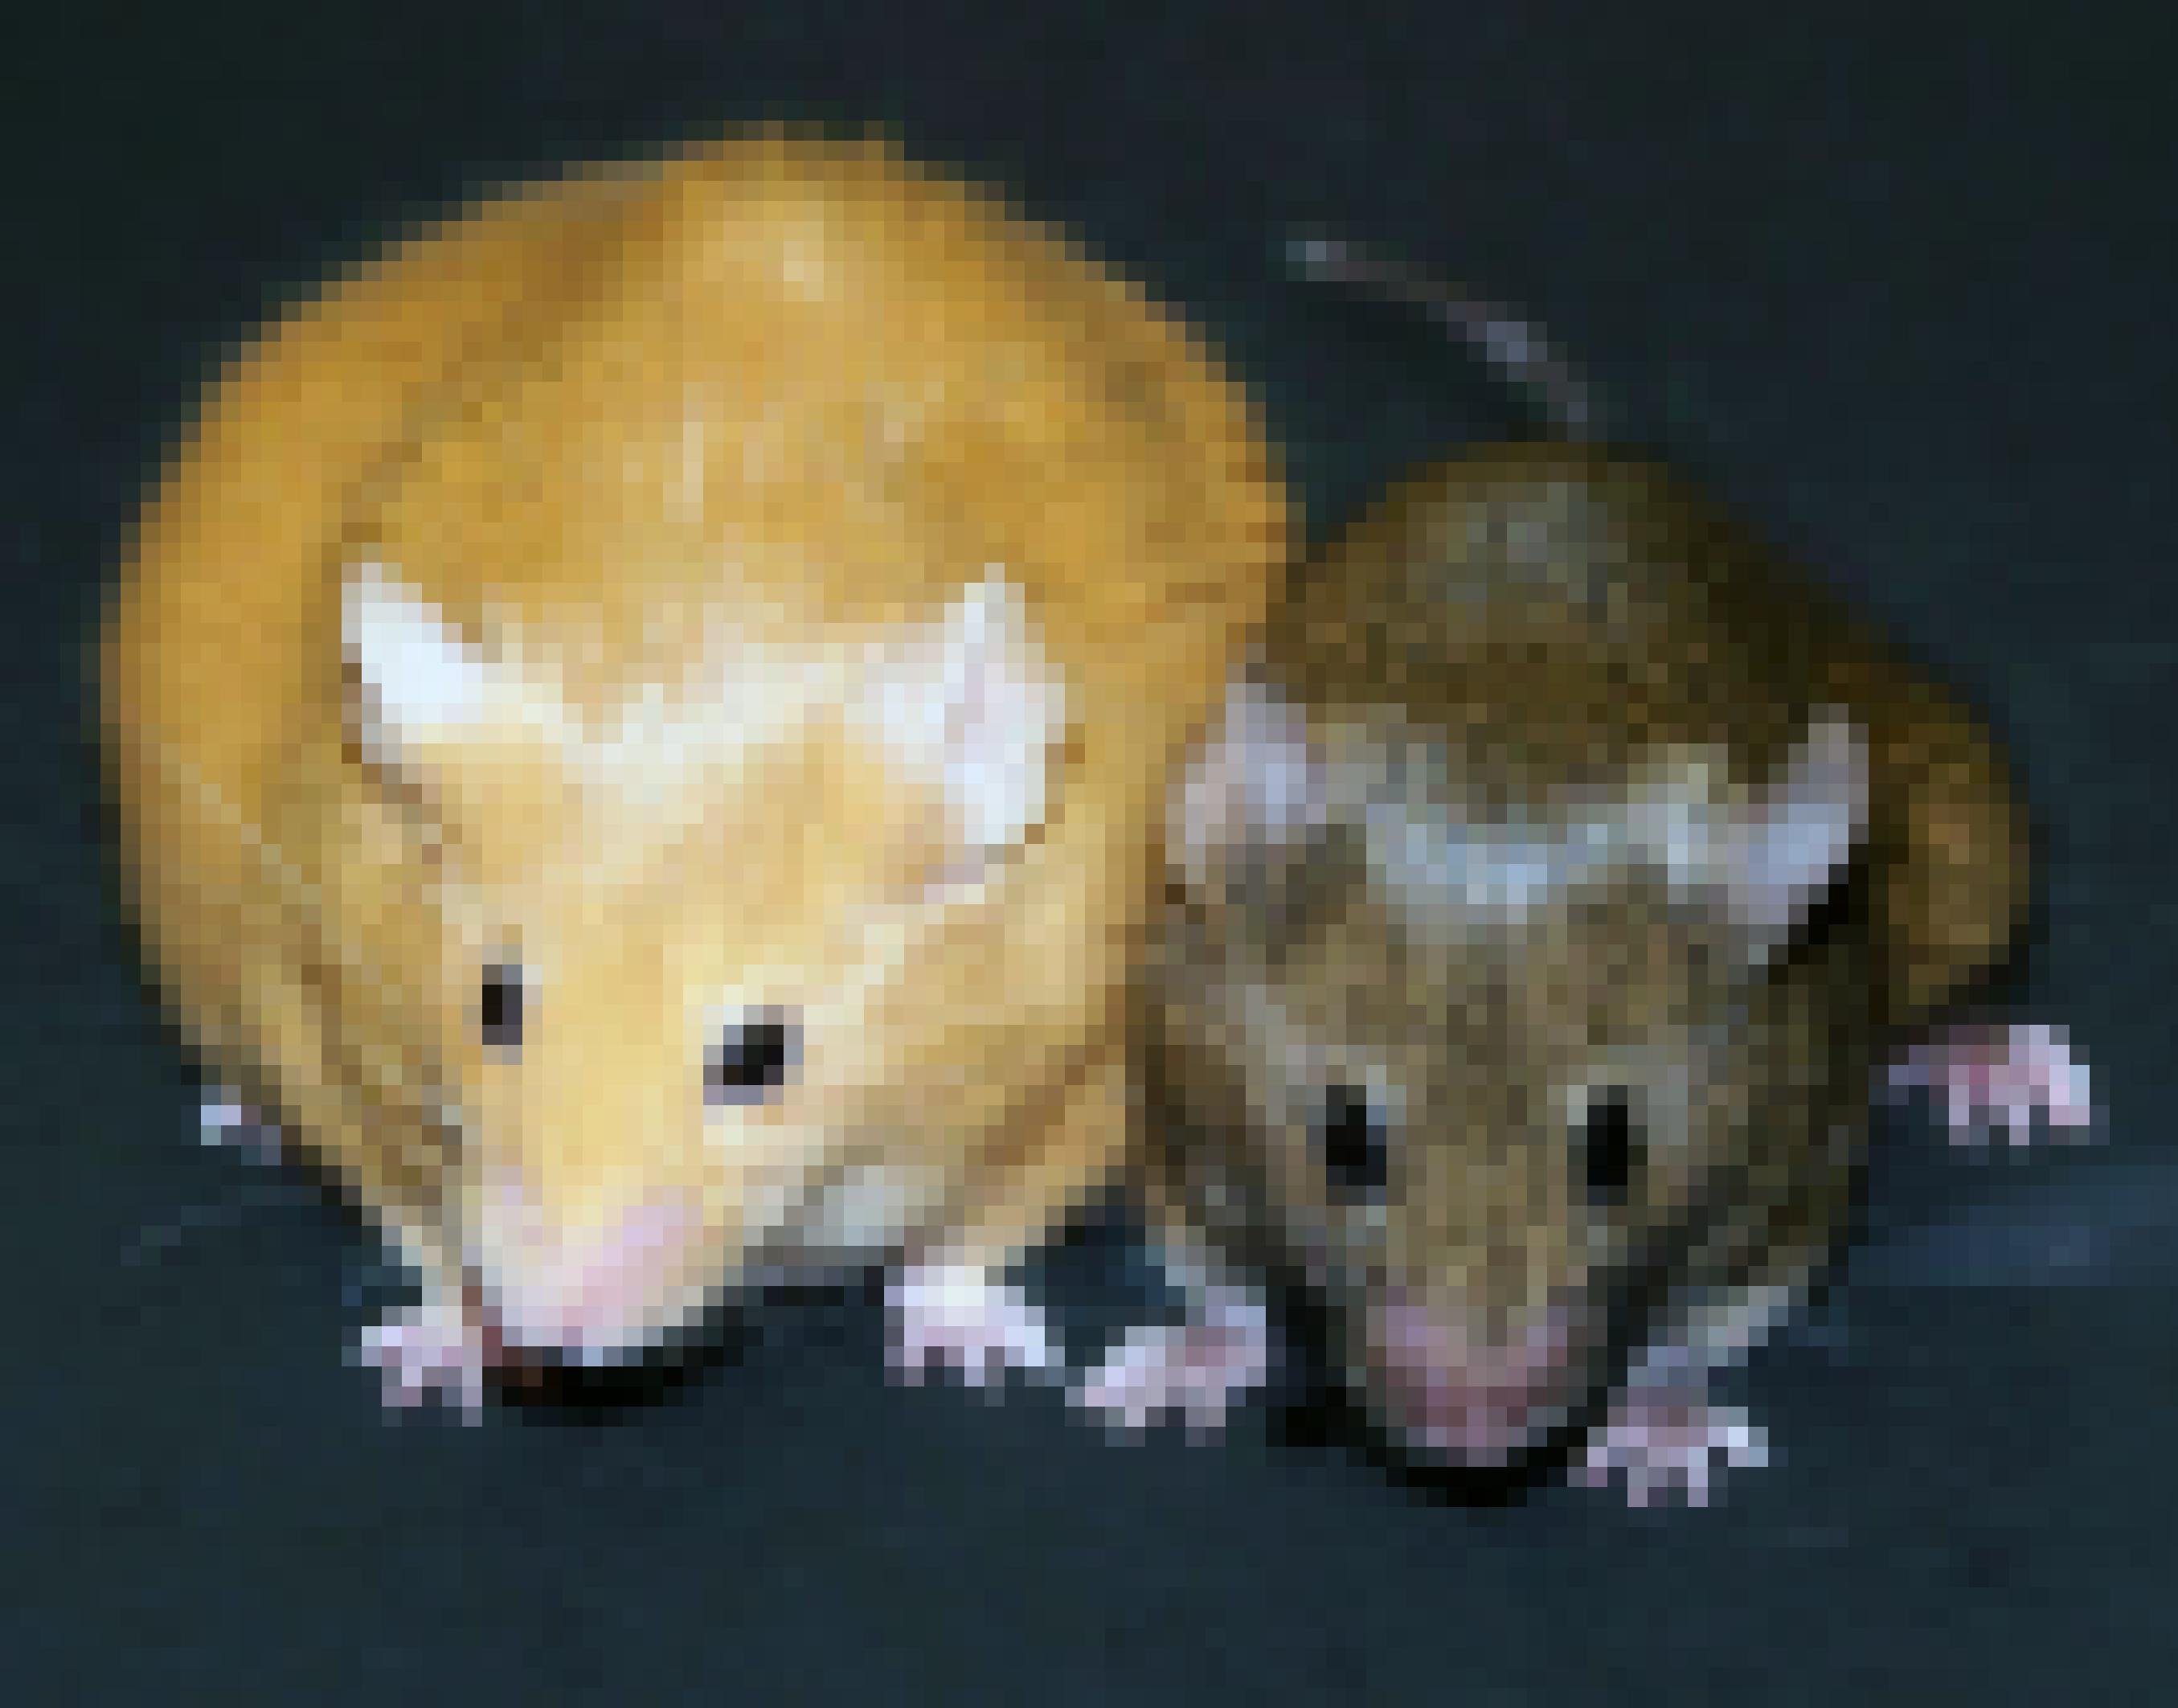 Eine dicke gelbe Maus neben einer schlanken braunen Maus.